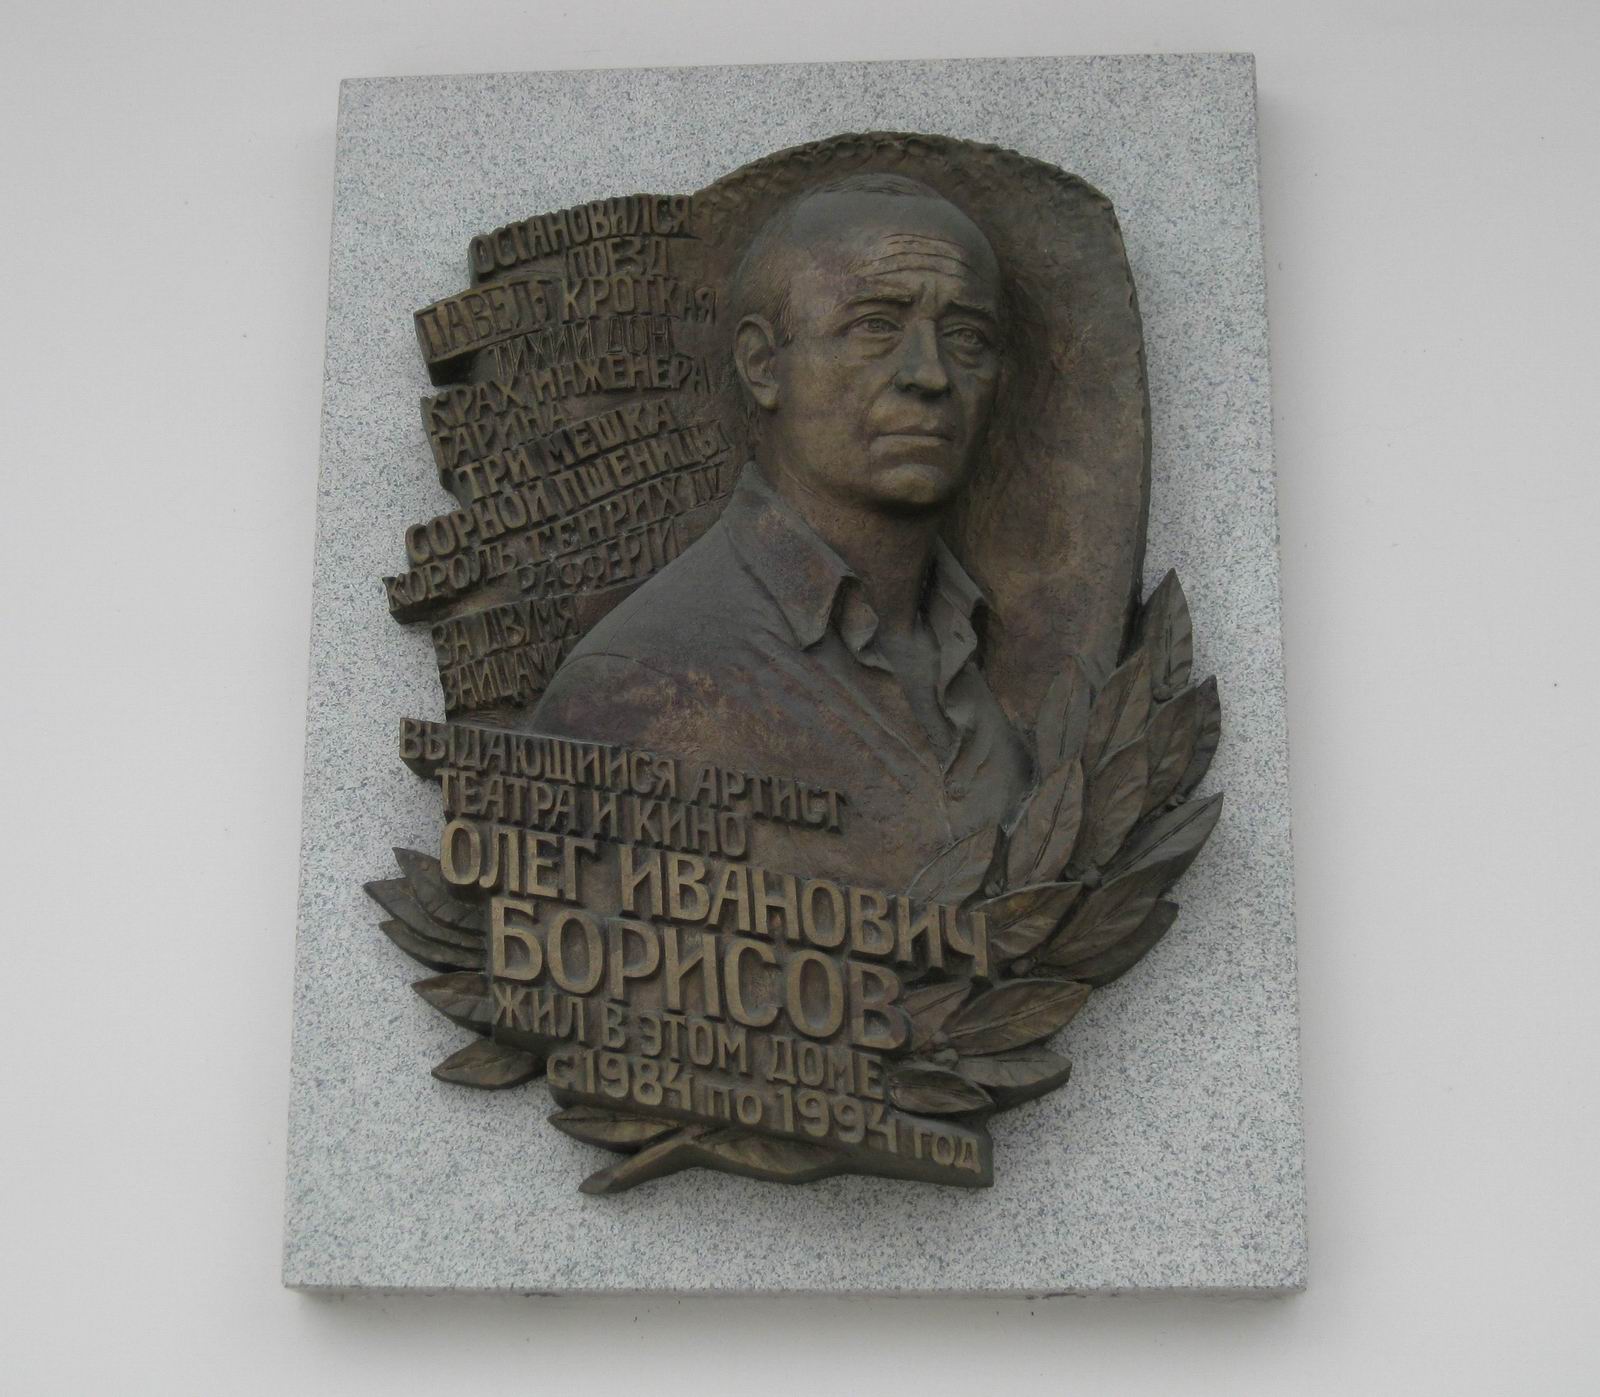 Мемориальная доска Борисову О.И. (1929–1994), ск. И.Казанский, на Большой Грузинской улице, дом 39, открыта 4.11.2004.